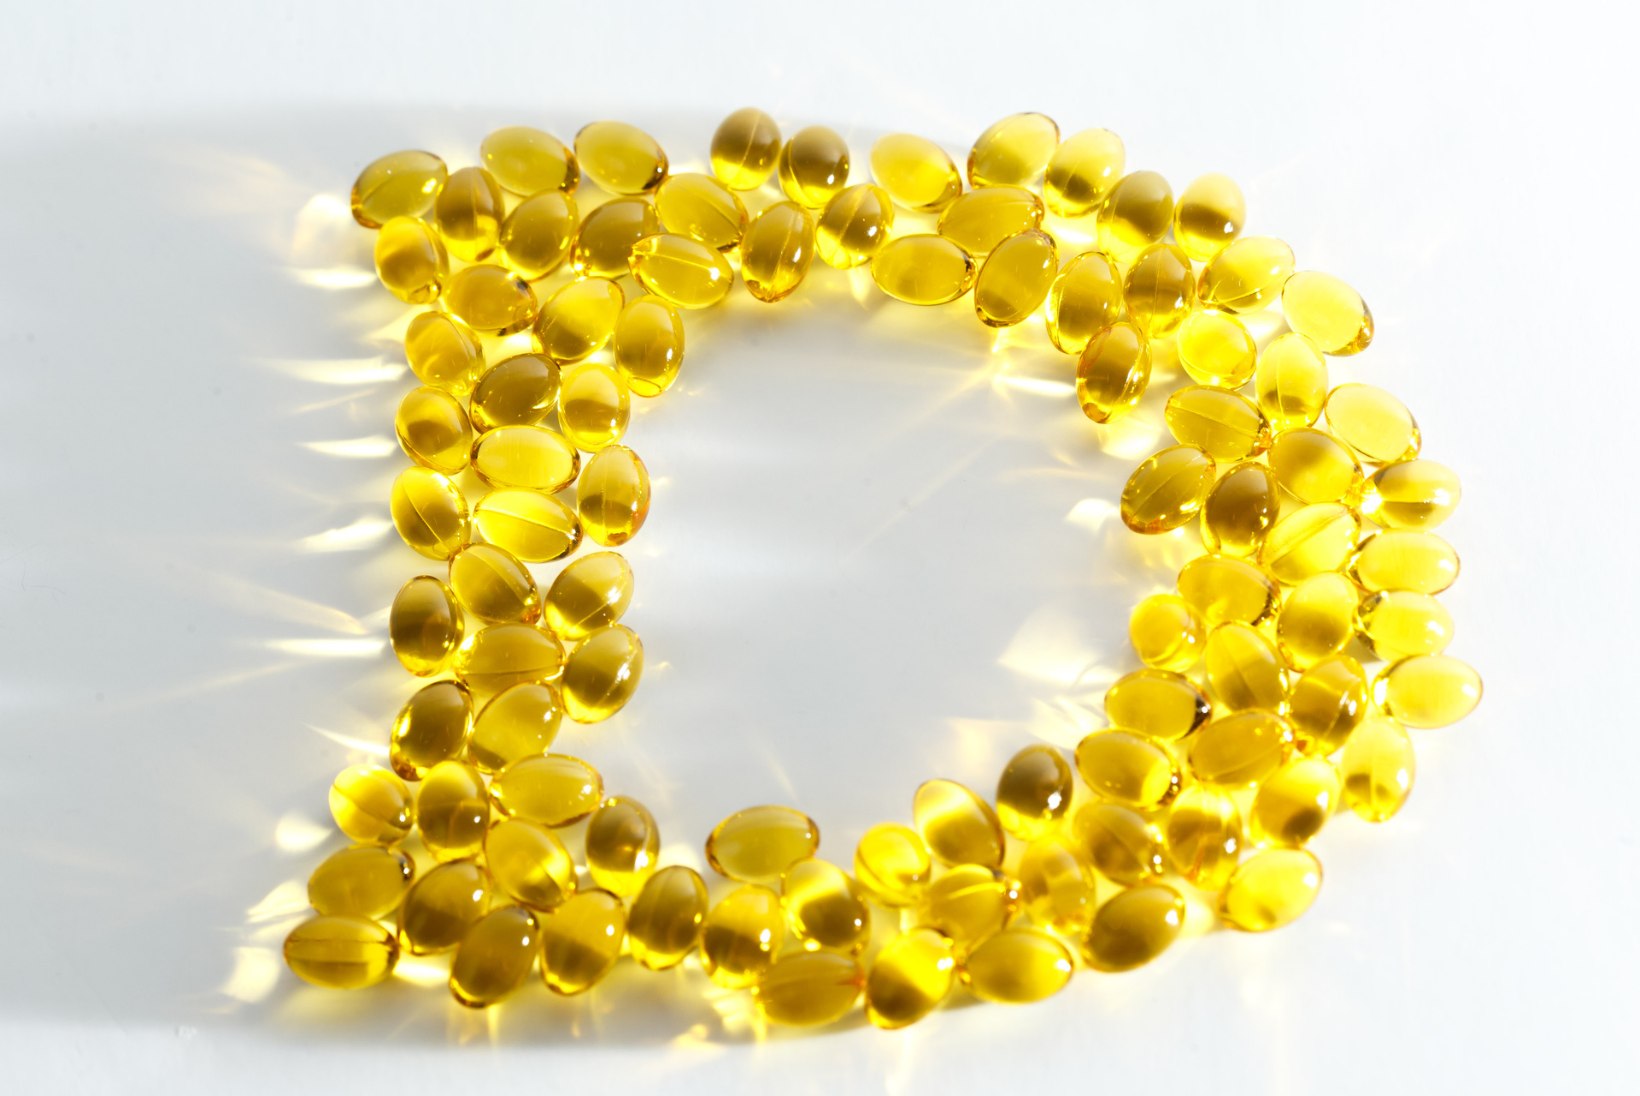 D-vitamiin on asendamatu! See aitab ära hoida mitmeid haigusi, kuid need väited on küll ekslikud